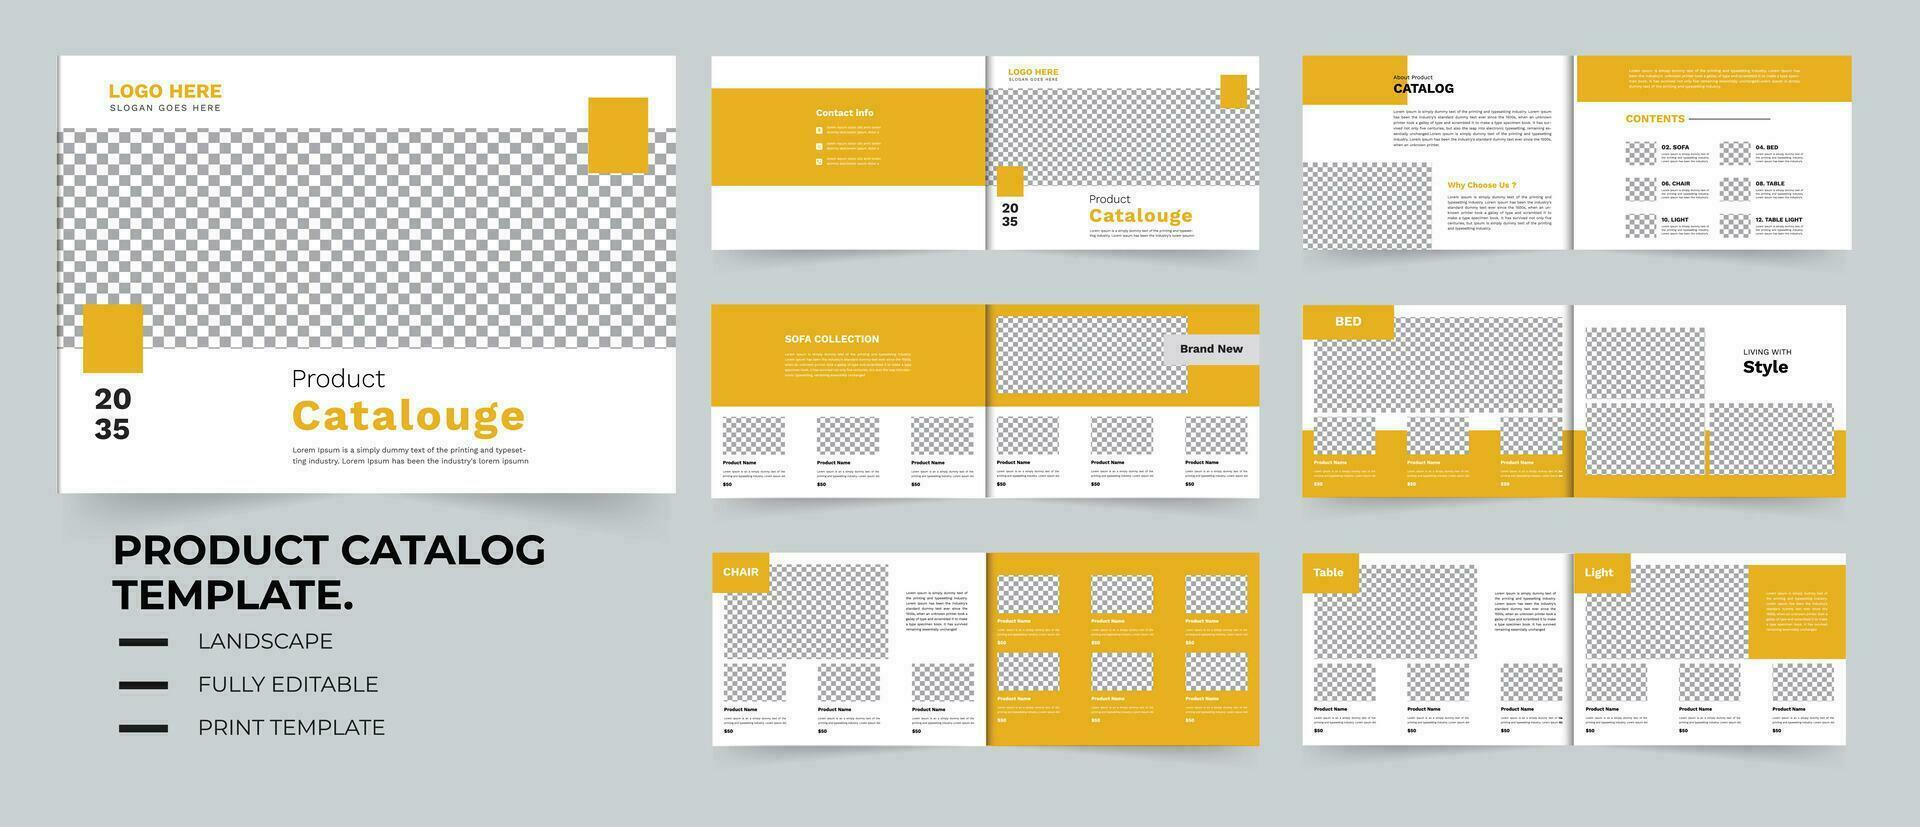 möbel produkt katalog design mall i gul Färg eller landskap katalog layout design vektor